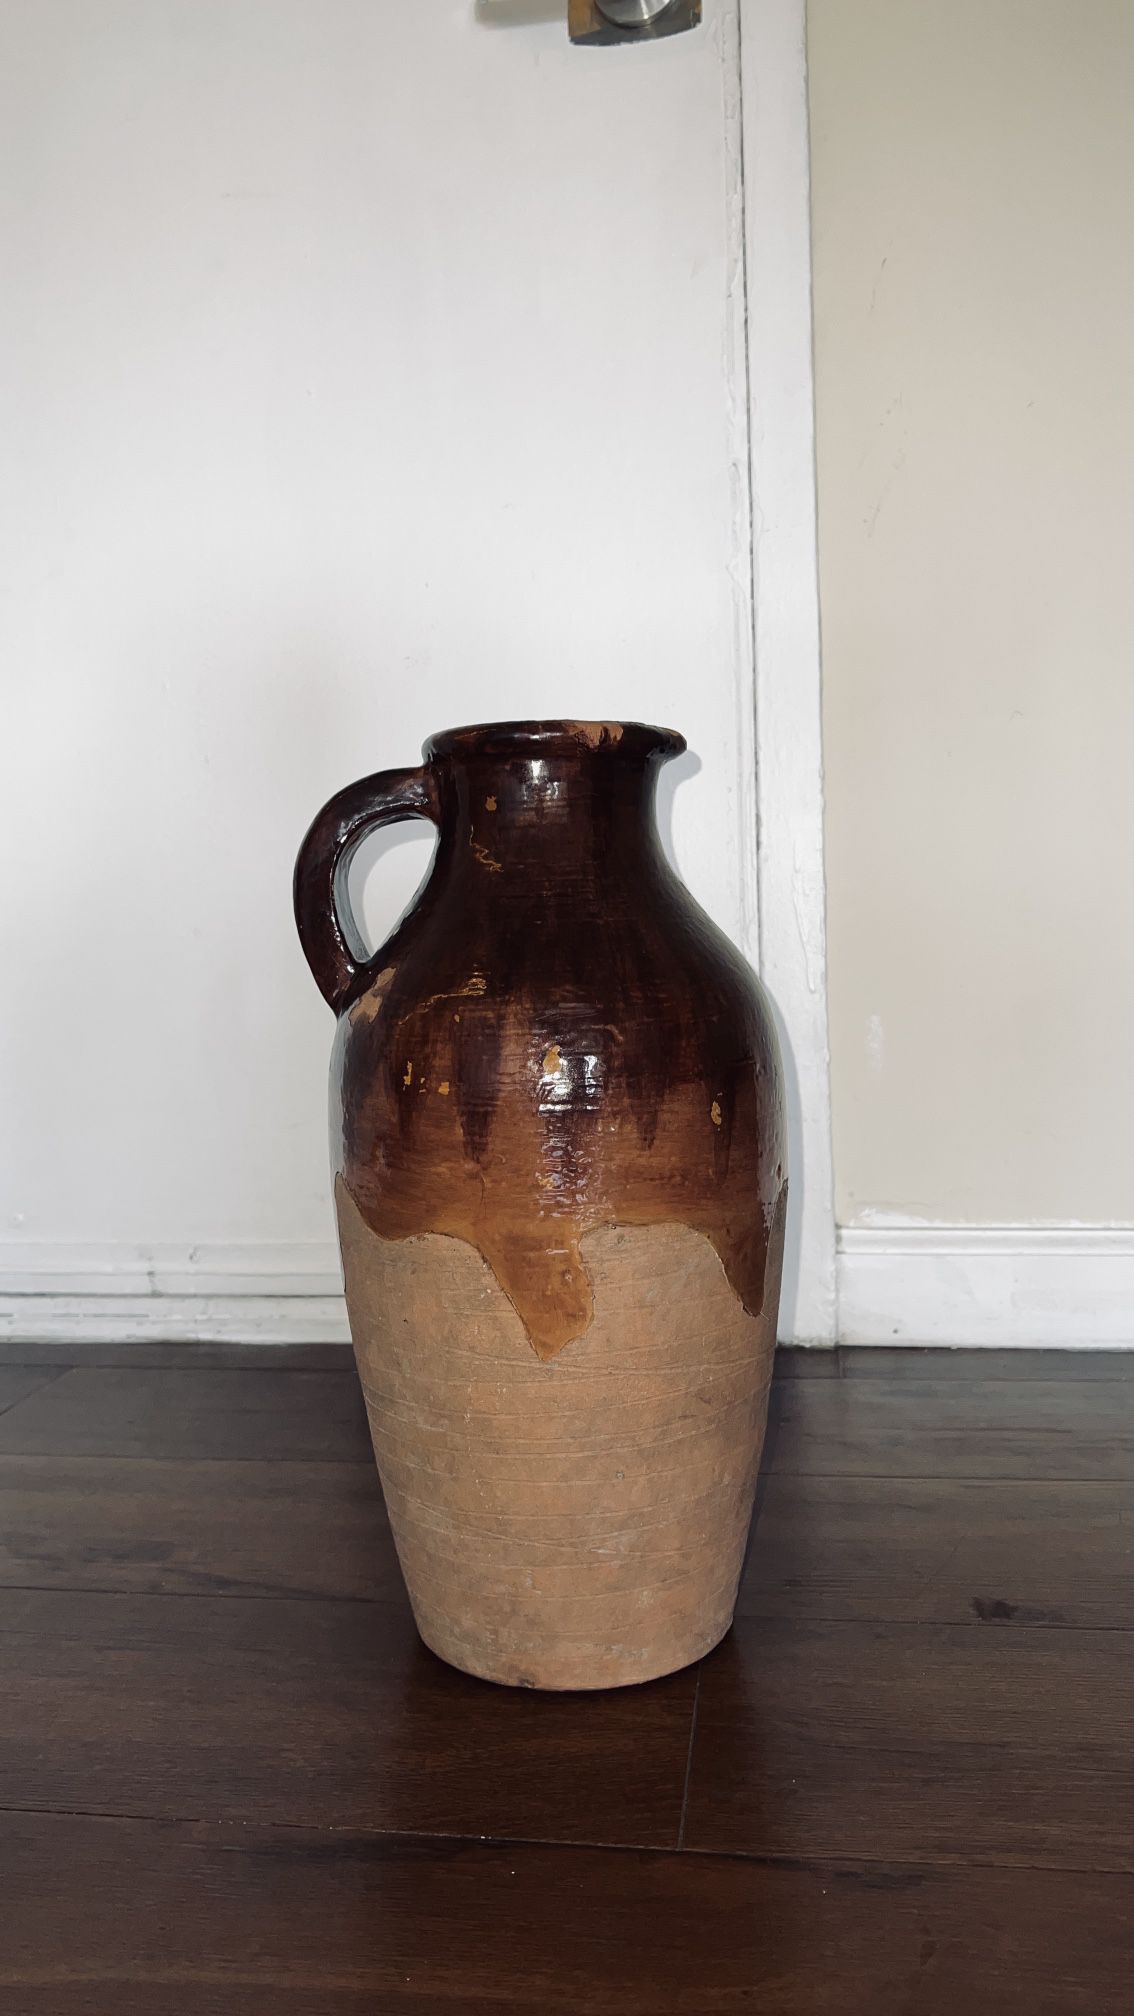  Decorative clay jug